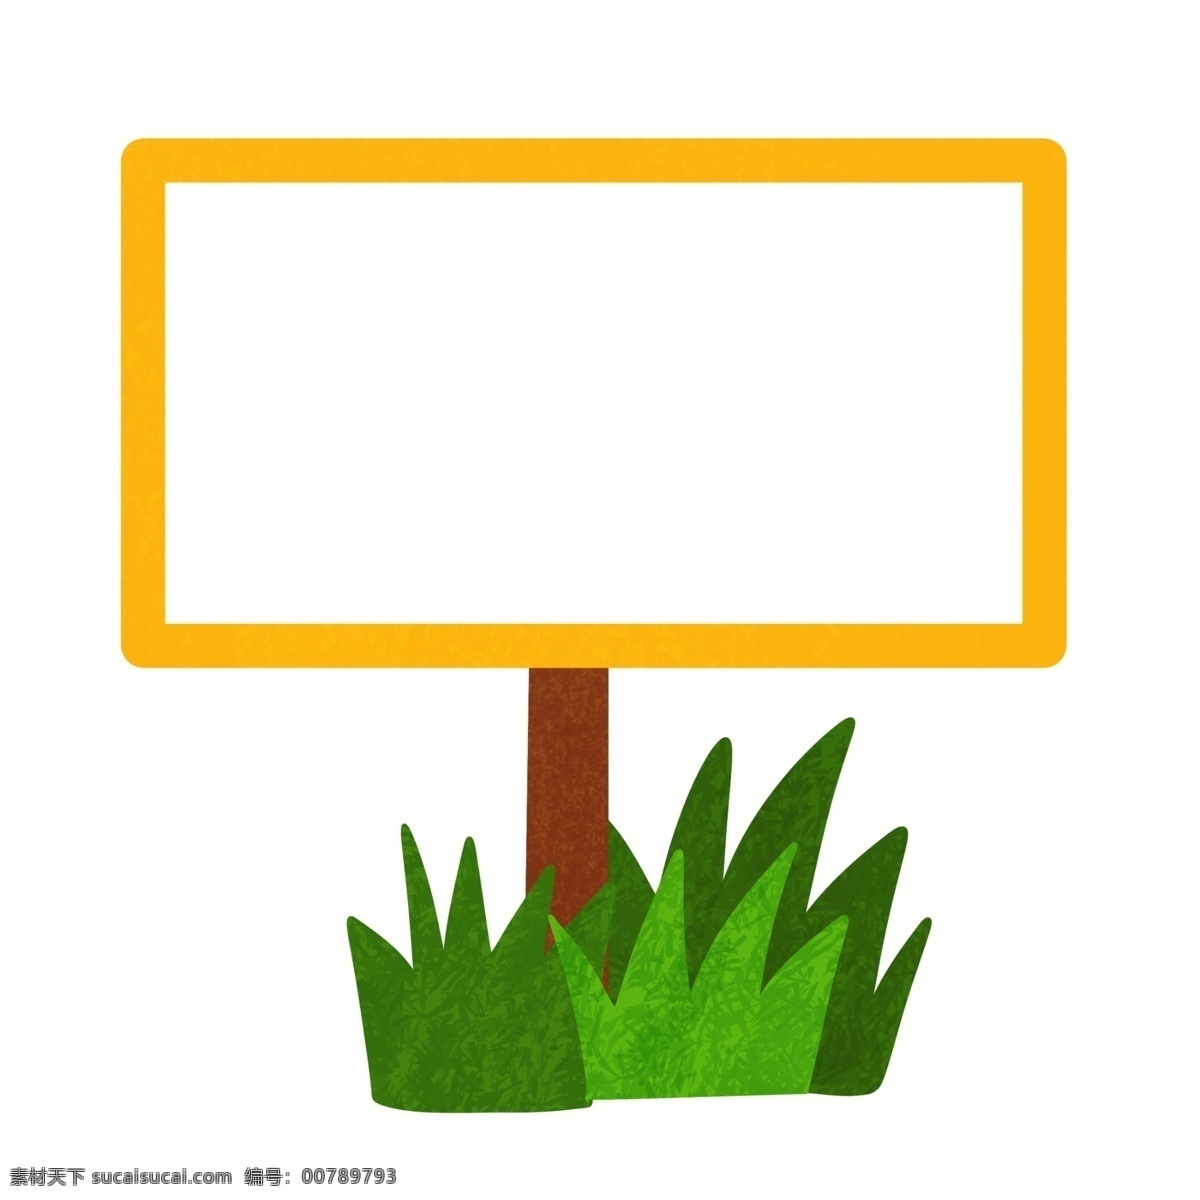 黄色 边框 装饰 插画 黄色的边框 植物边框 叶子边框 漂亮的边框 创意边框 立体边框 卡通边框